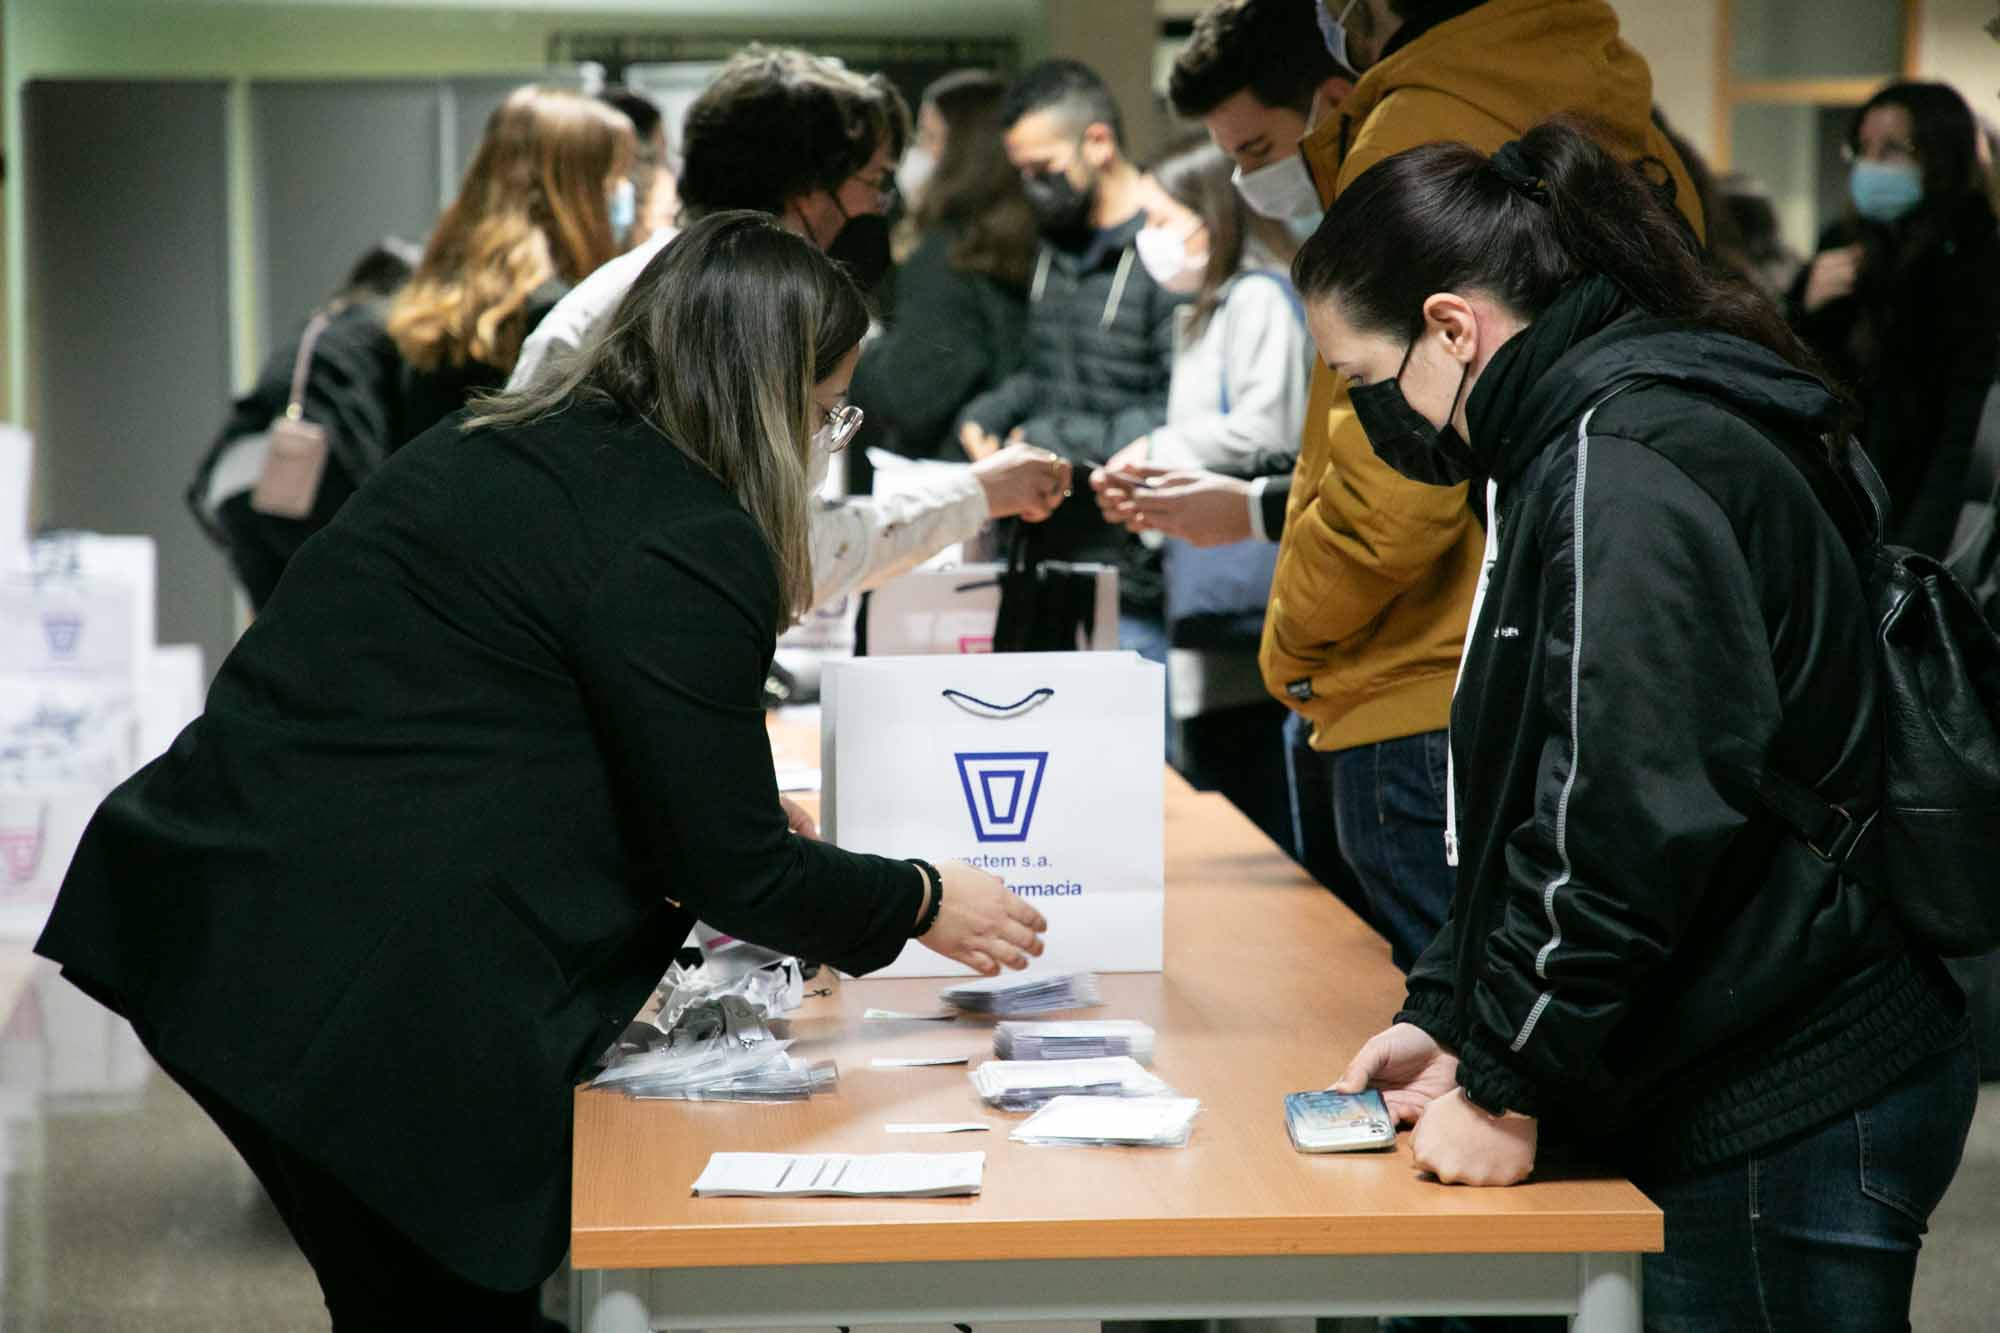 XII Congreso de Estudiantes de Farmacia de la Universitat de València